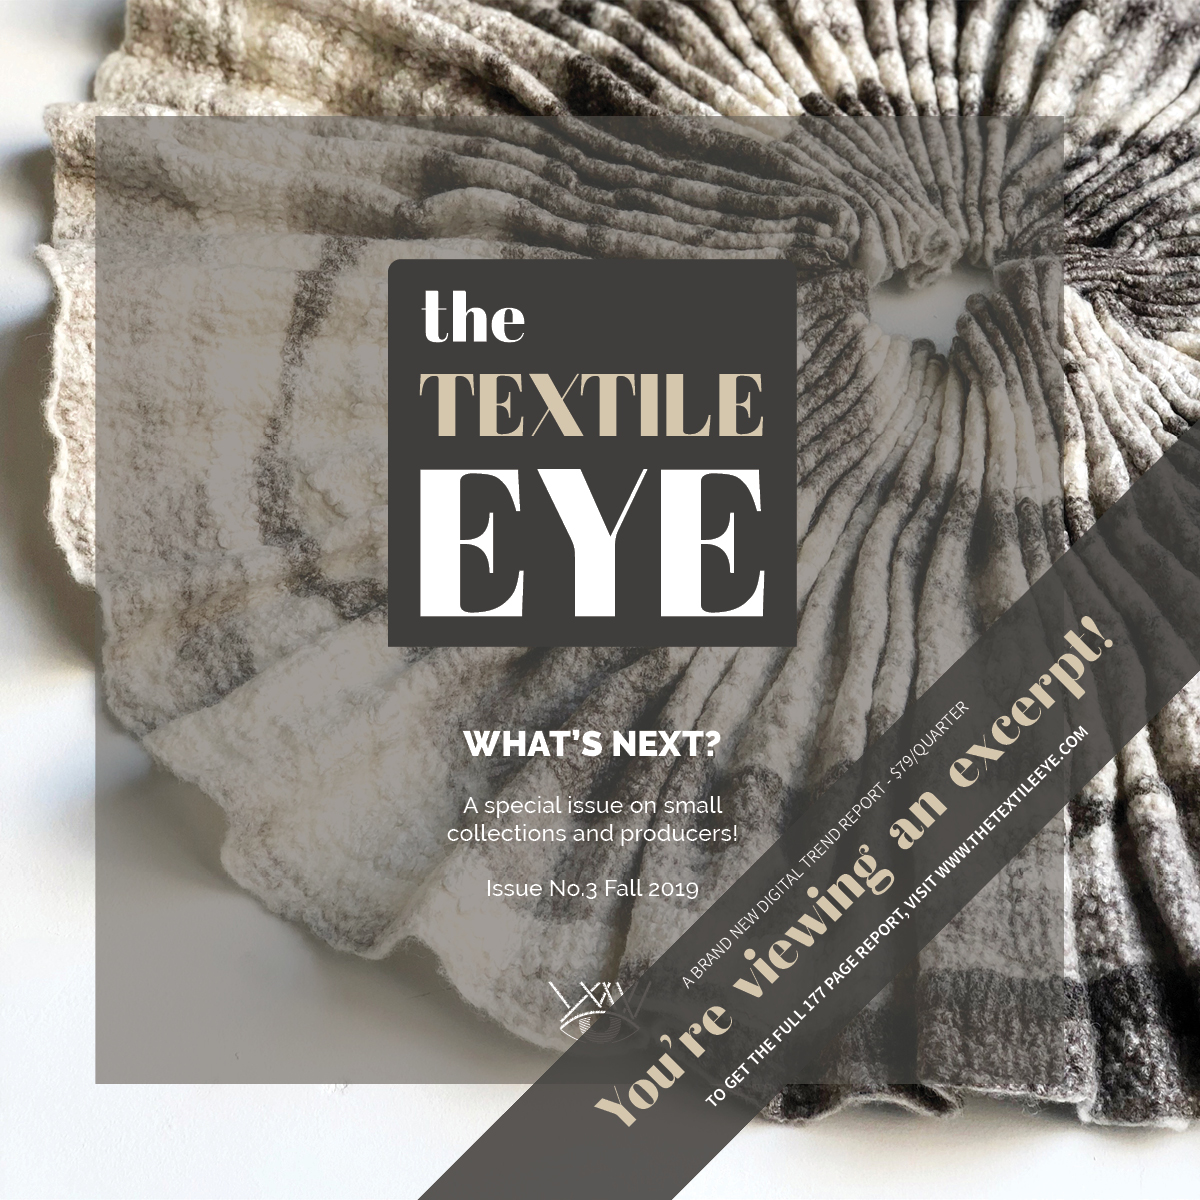 The Textile Eye Issue 2 Summer 19 Excerpt LR21.jpg